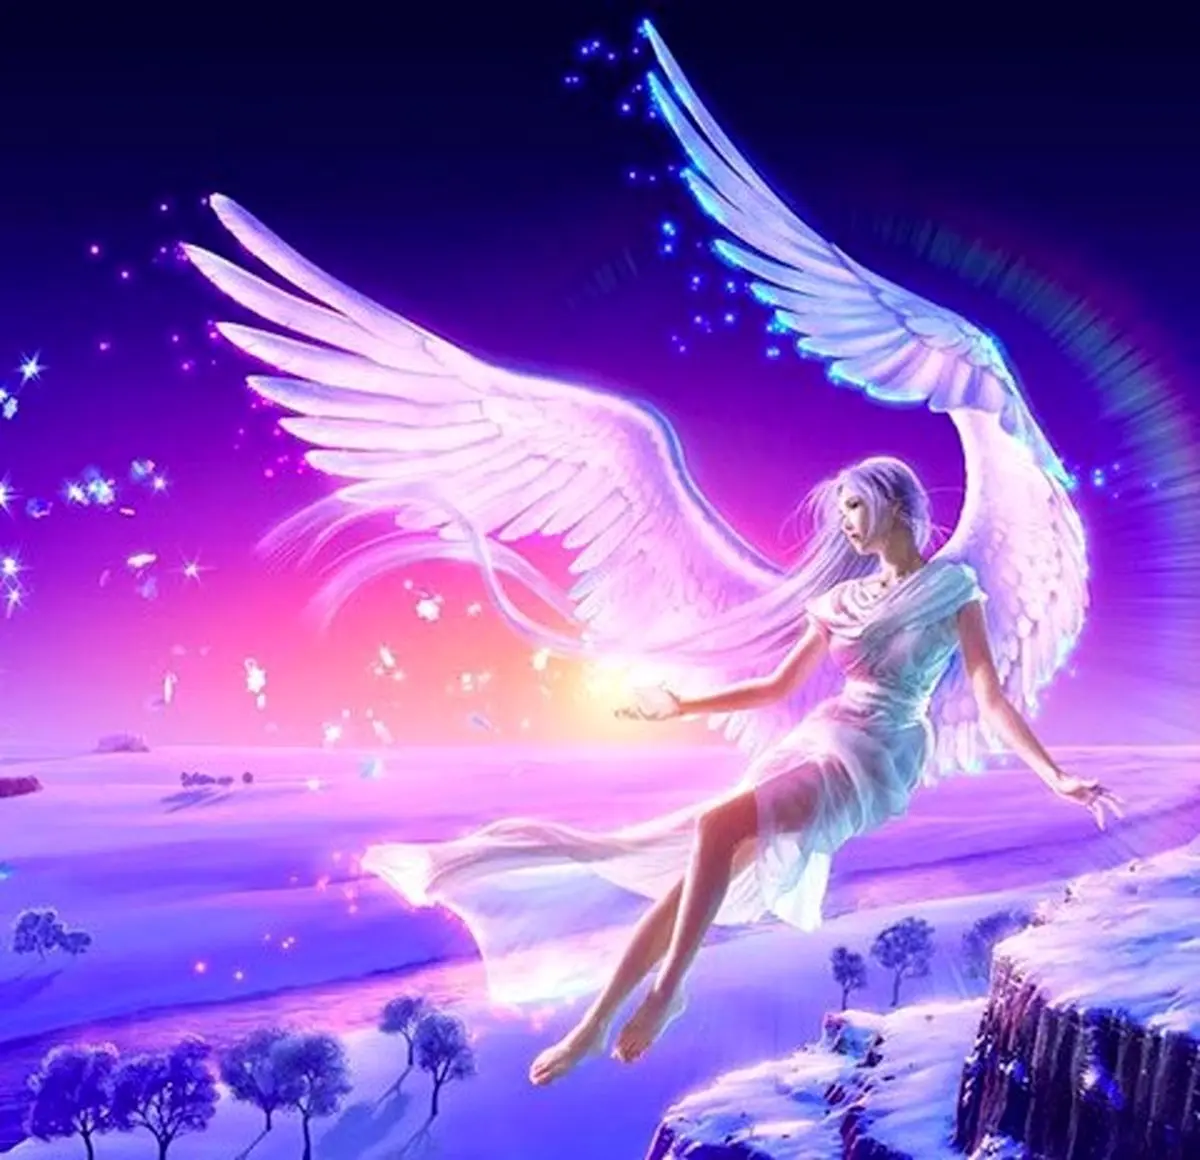 فال فرشتگان 9 مهرماه | فرشتگان برای شما چه پیام مثبتی دارند؟